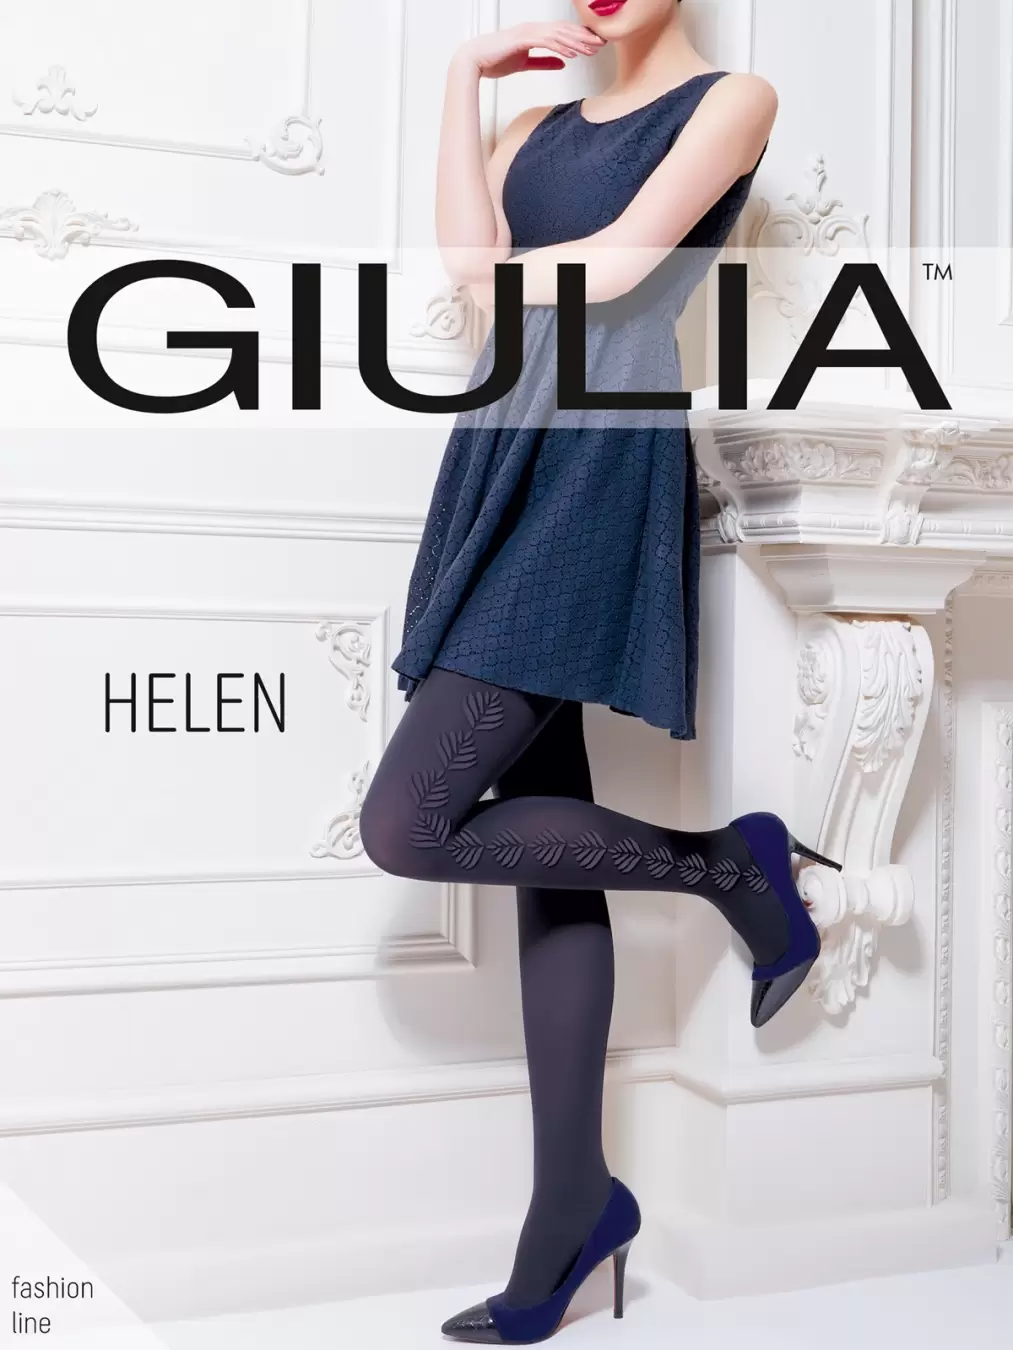 Giulia HELEN 02, фантазийные колготки (изображение 1)